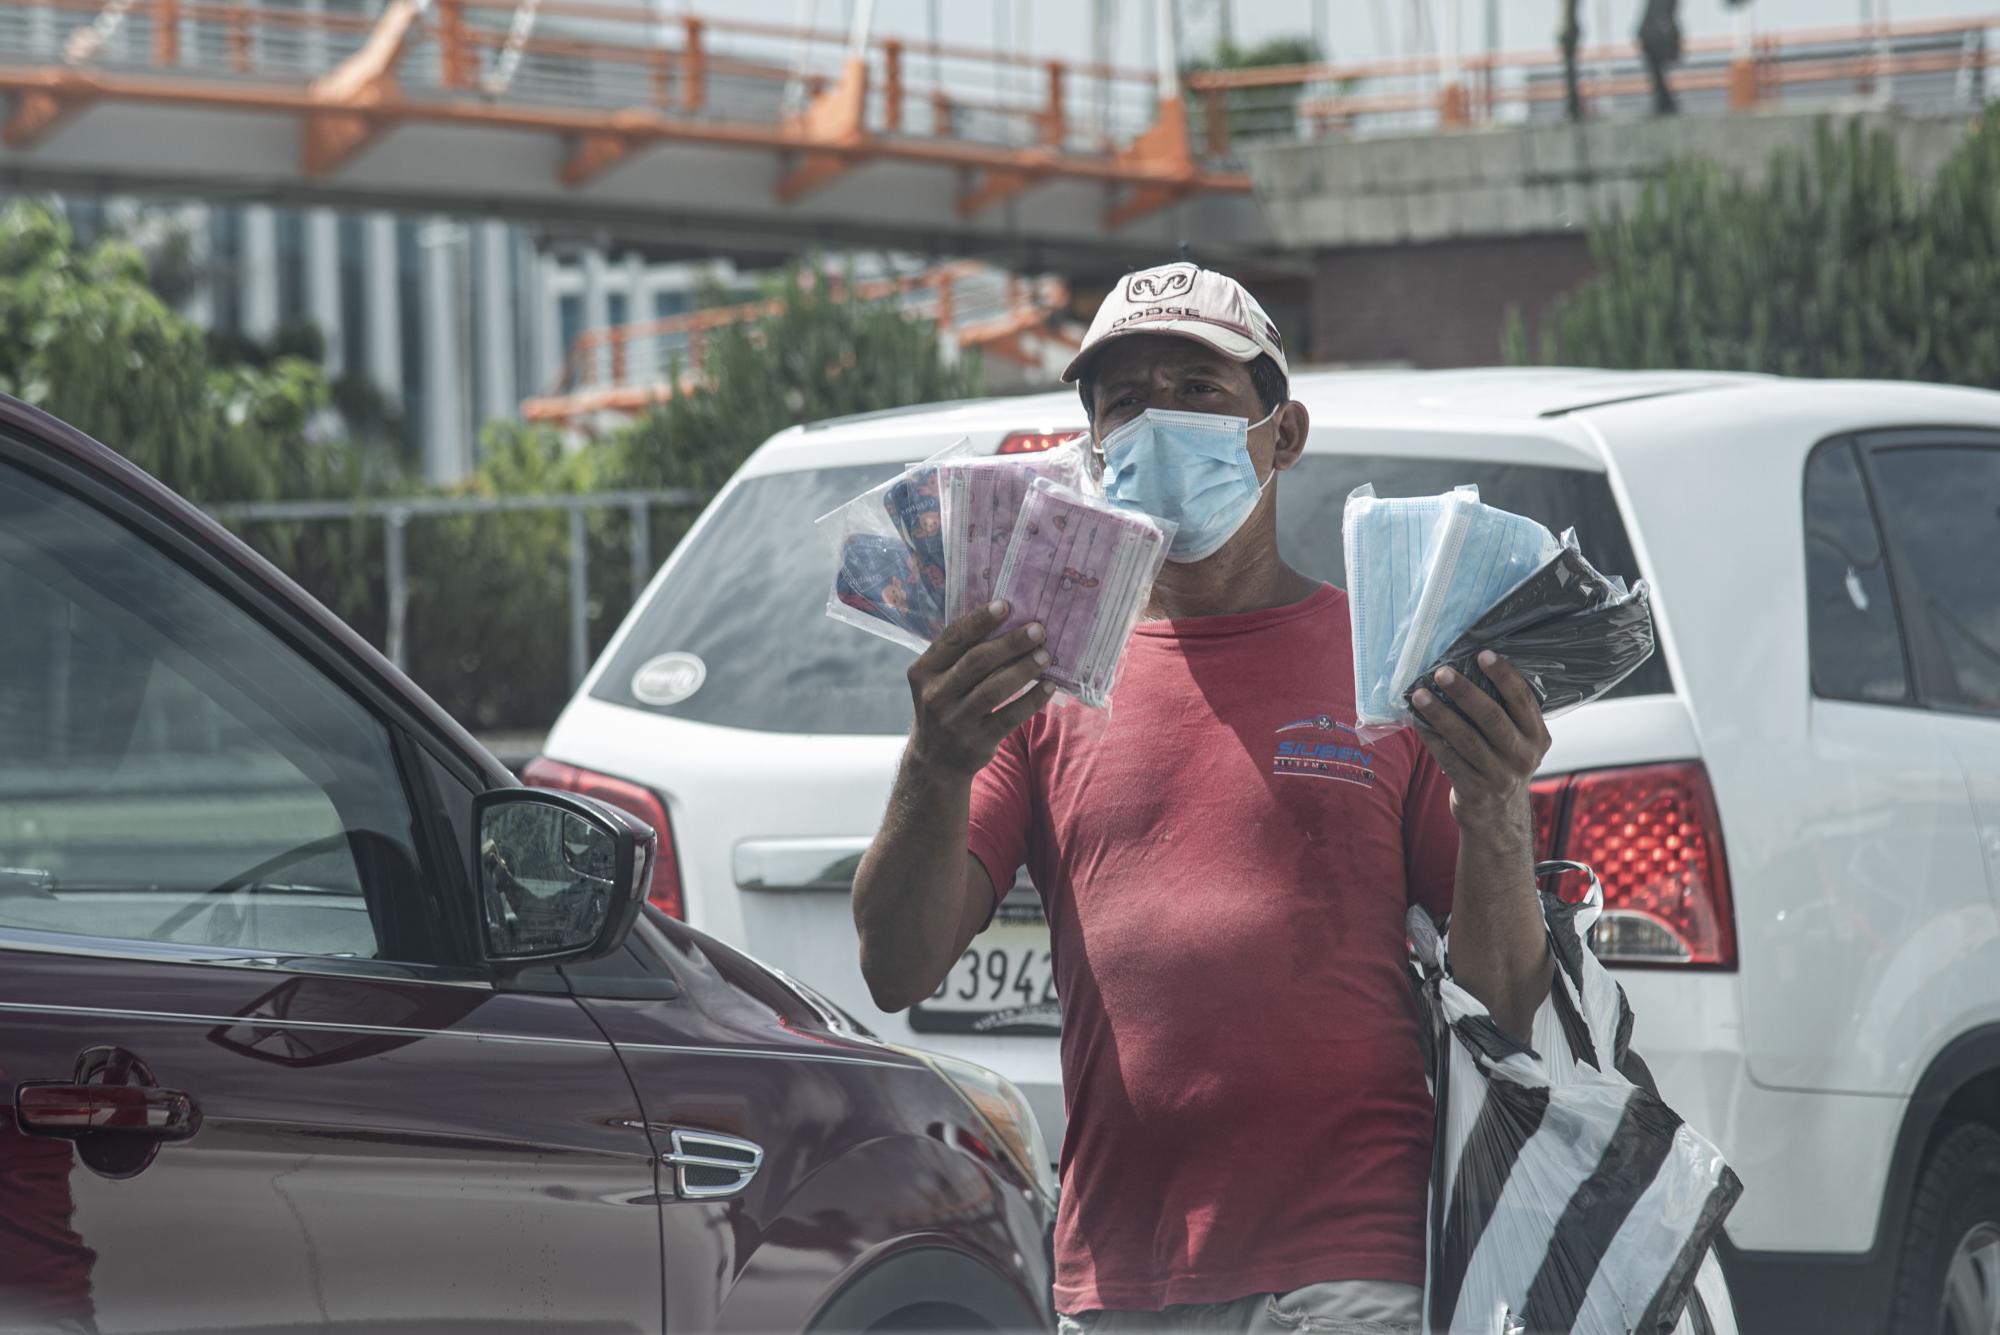 En tiempo de pandemia los vendedores informales sacan provecho vendiendo productos relacionados con la crisis sanitaria. (Foto: Dania Acevedo)